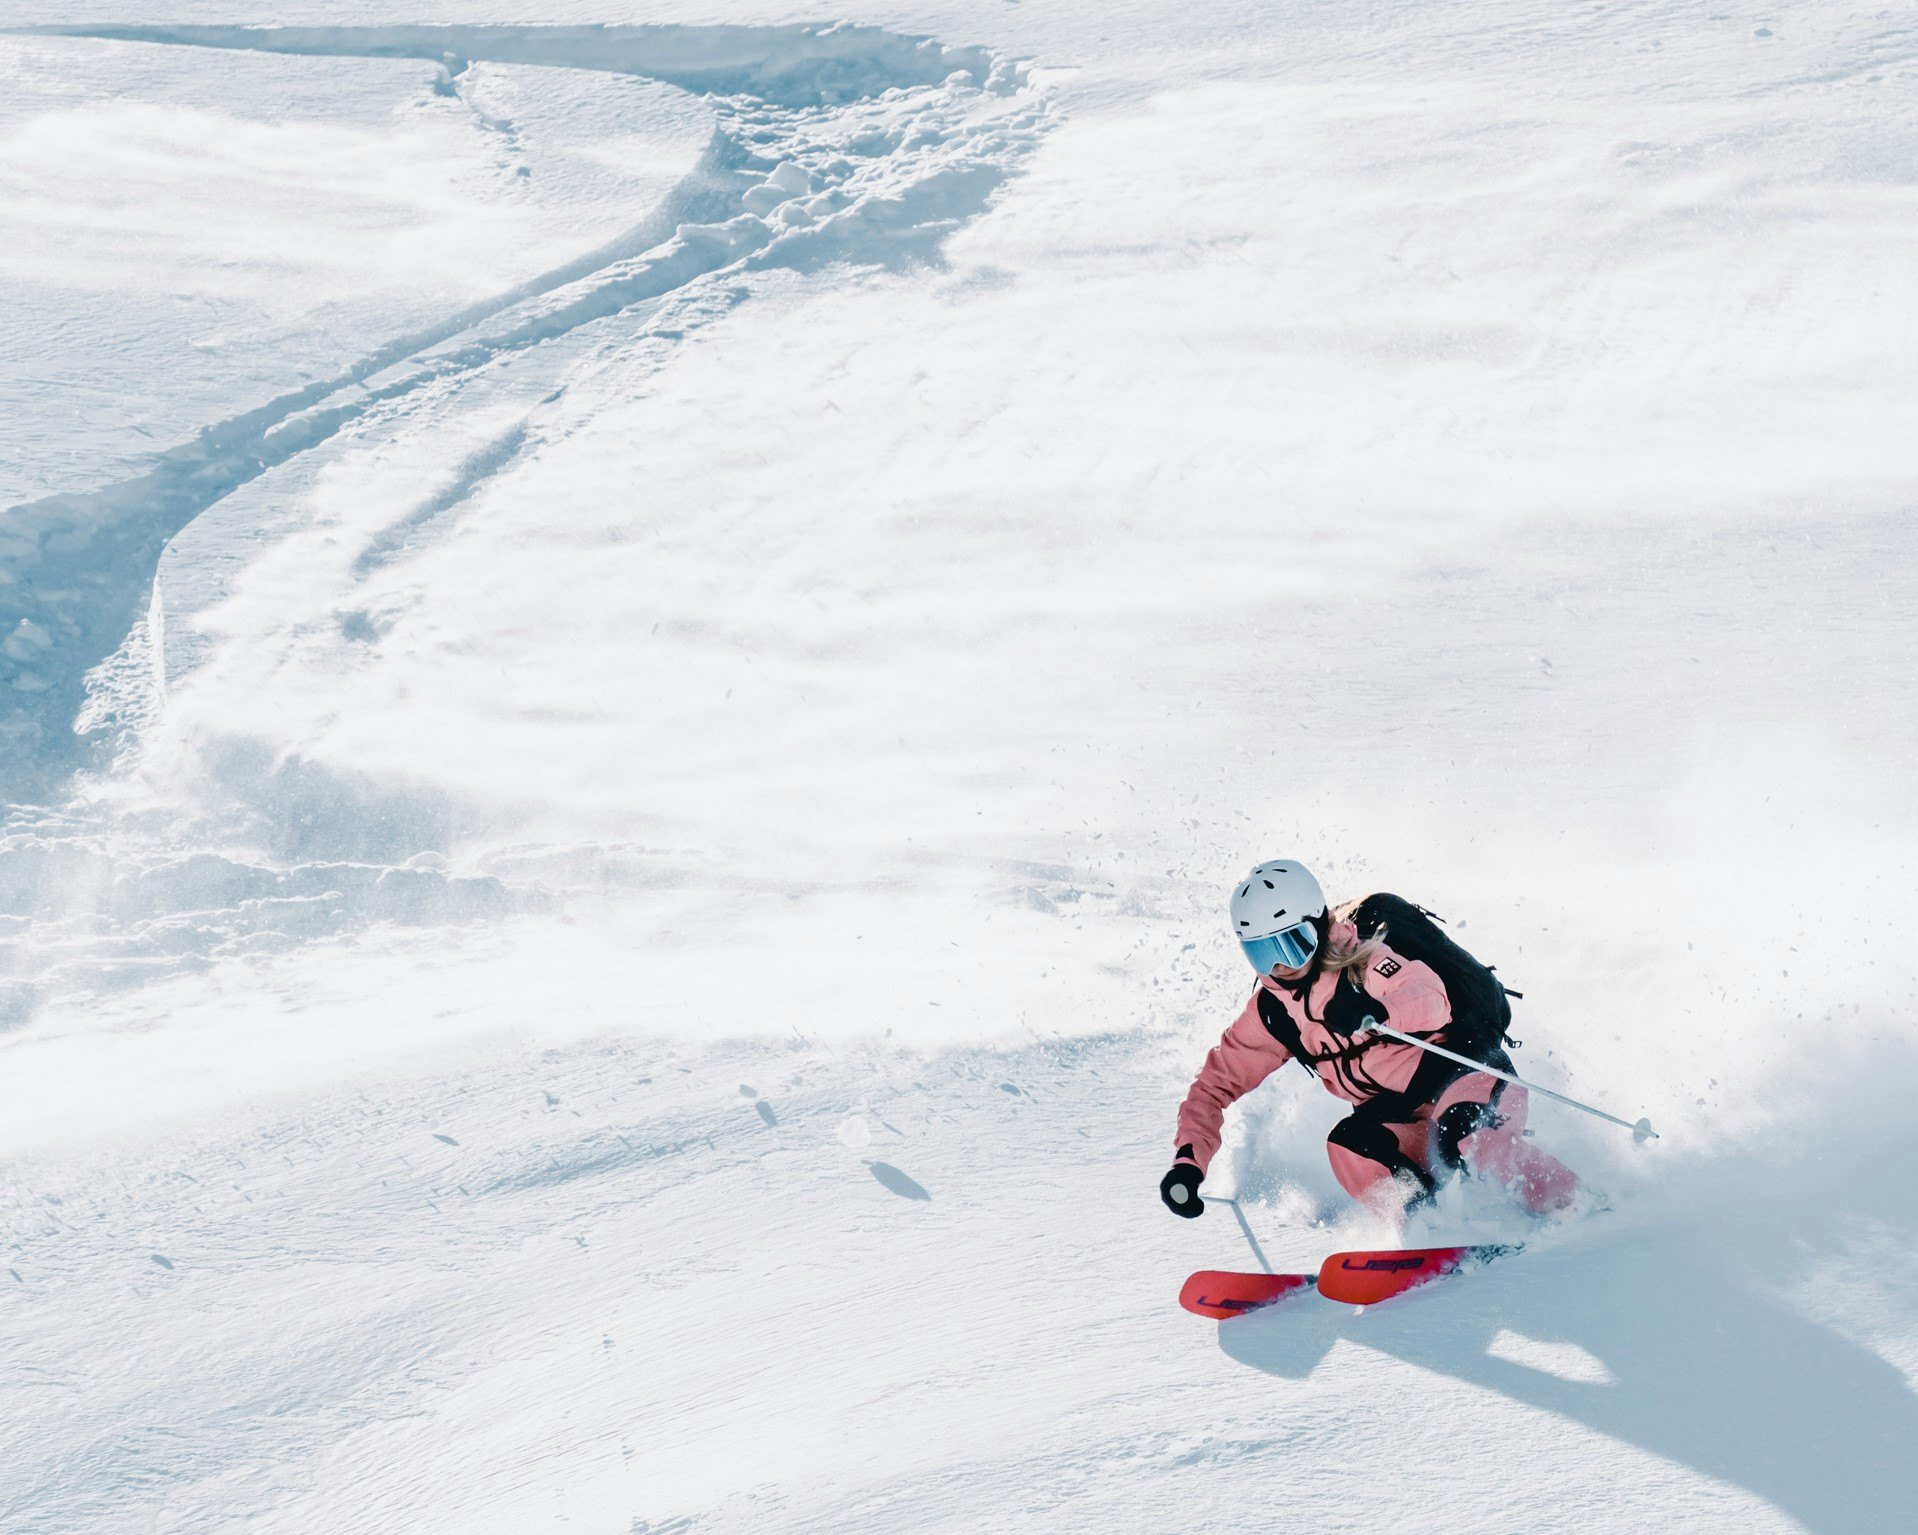 5 häufige Fehler beim Tiefschnee Skifahren